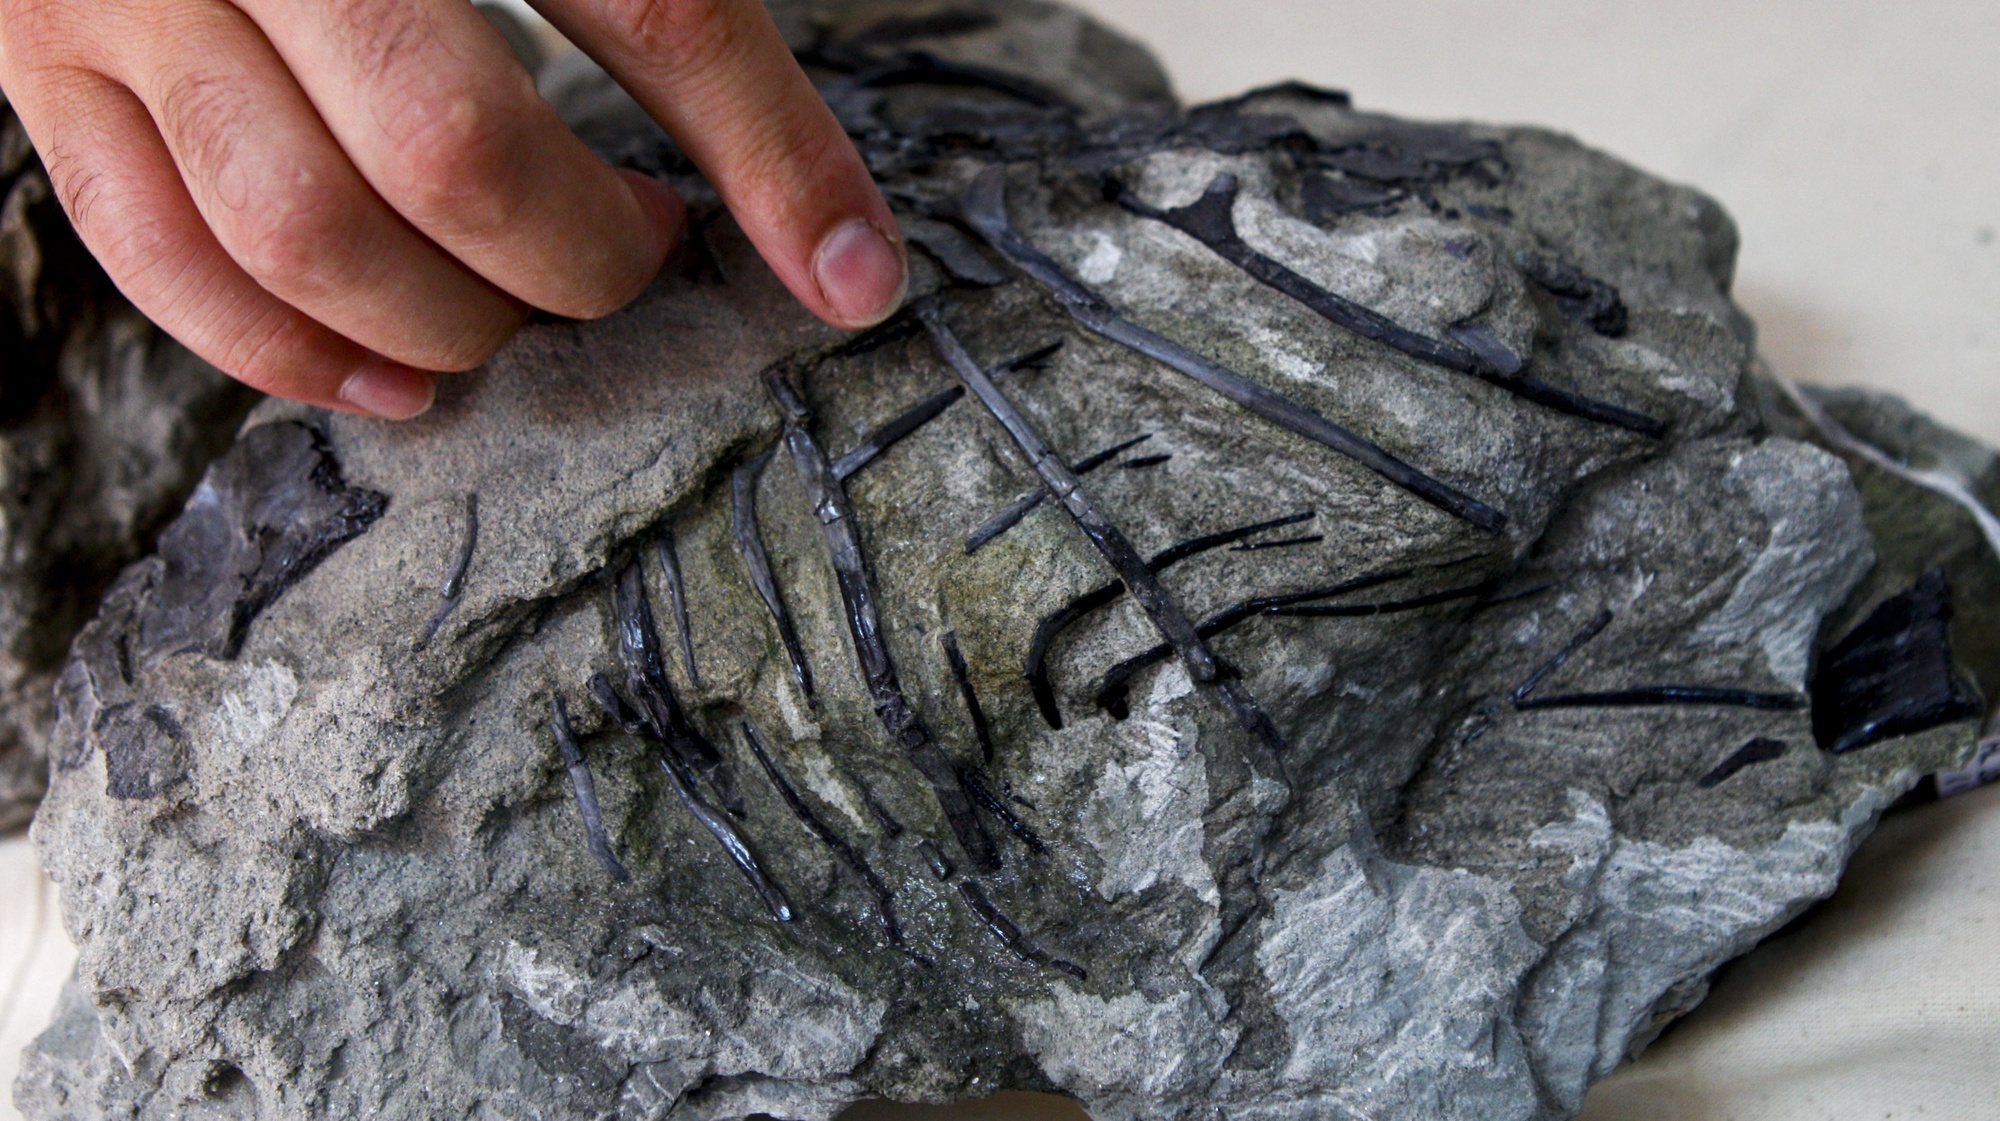 O paleontólogo Octávio Mateus mostra uma parte do esqueleto do dinossauro carnívoro por si descoberto e que terá mais de 150 milhões de anos. Este dinossauro agora descoberto é o mais completo encontrado em Portugal e um dos mais completos do Jurássico Superior em todo o mundo e irá permitir estudar como os dinossauros evoluíram e como, neste caso, deram origem às aves. Museu da Lourinhã, 4 de setembro de 2013. (ACOMPANHA TEXTO) MIGUEL A. LOPES/LUSA